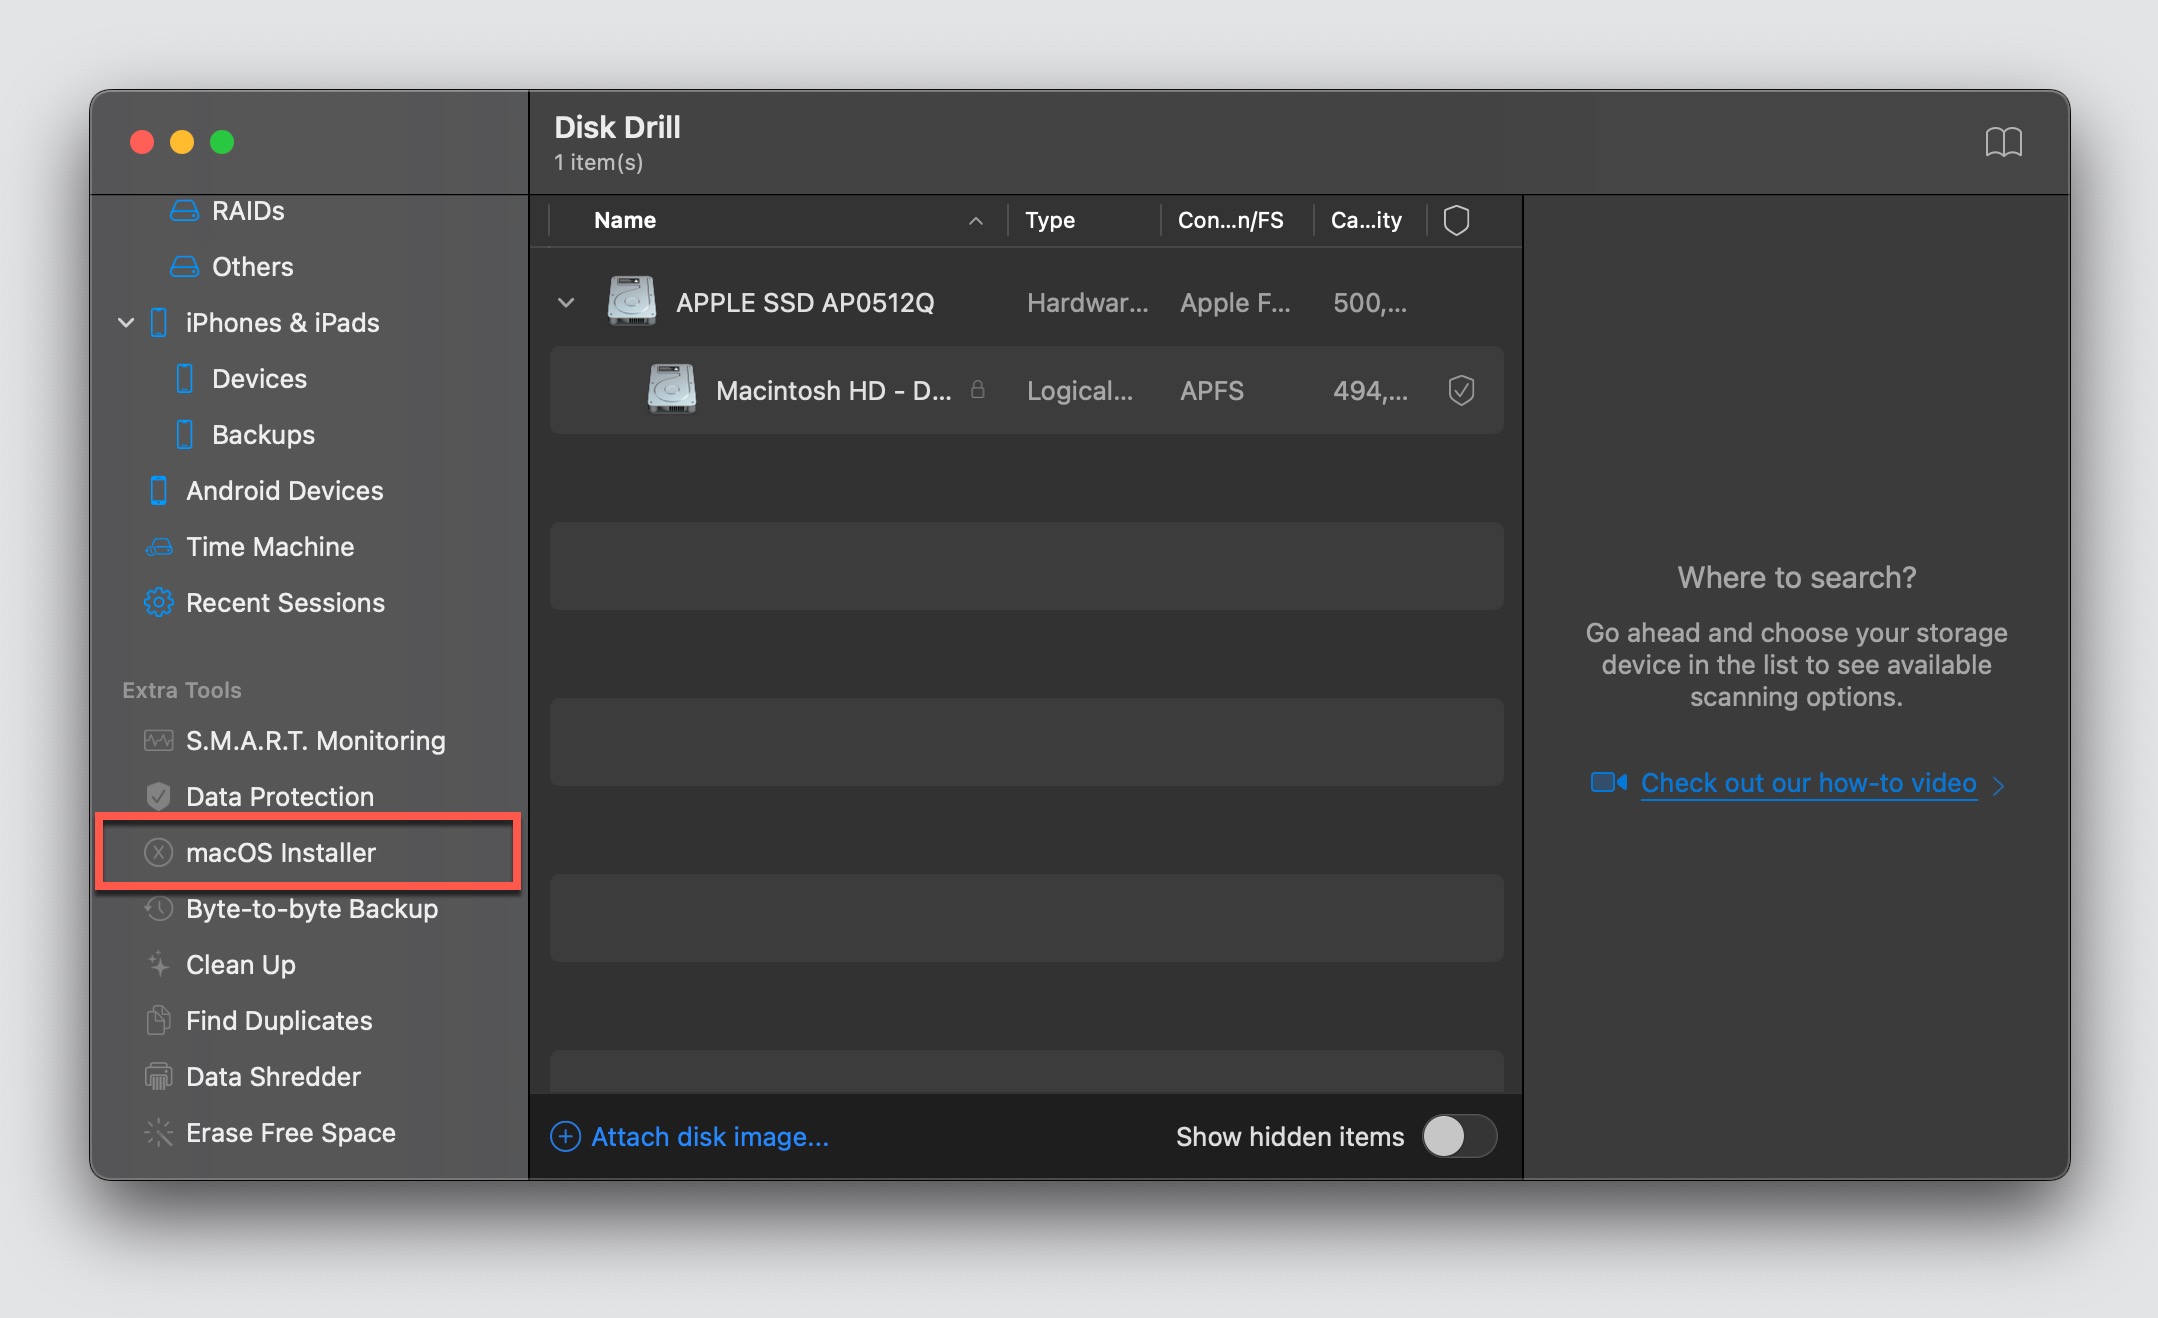 macos installer disk drill option highlighted